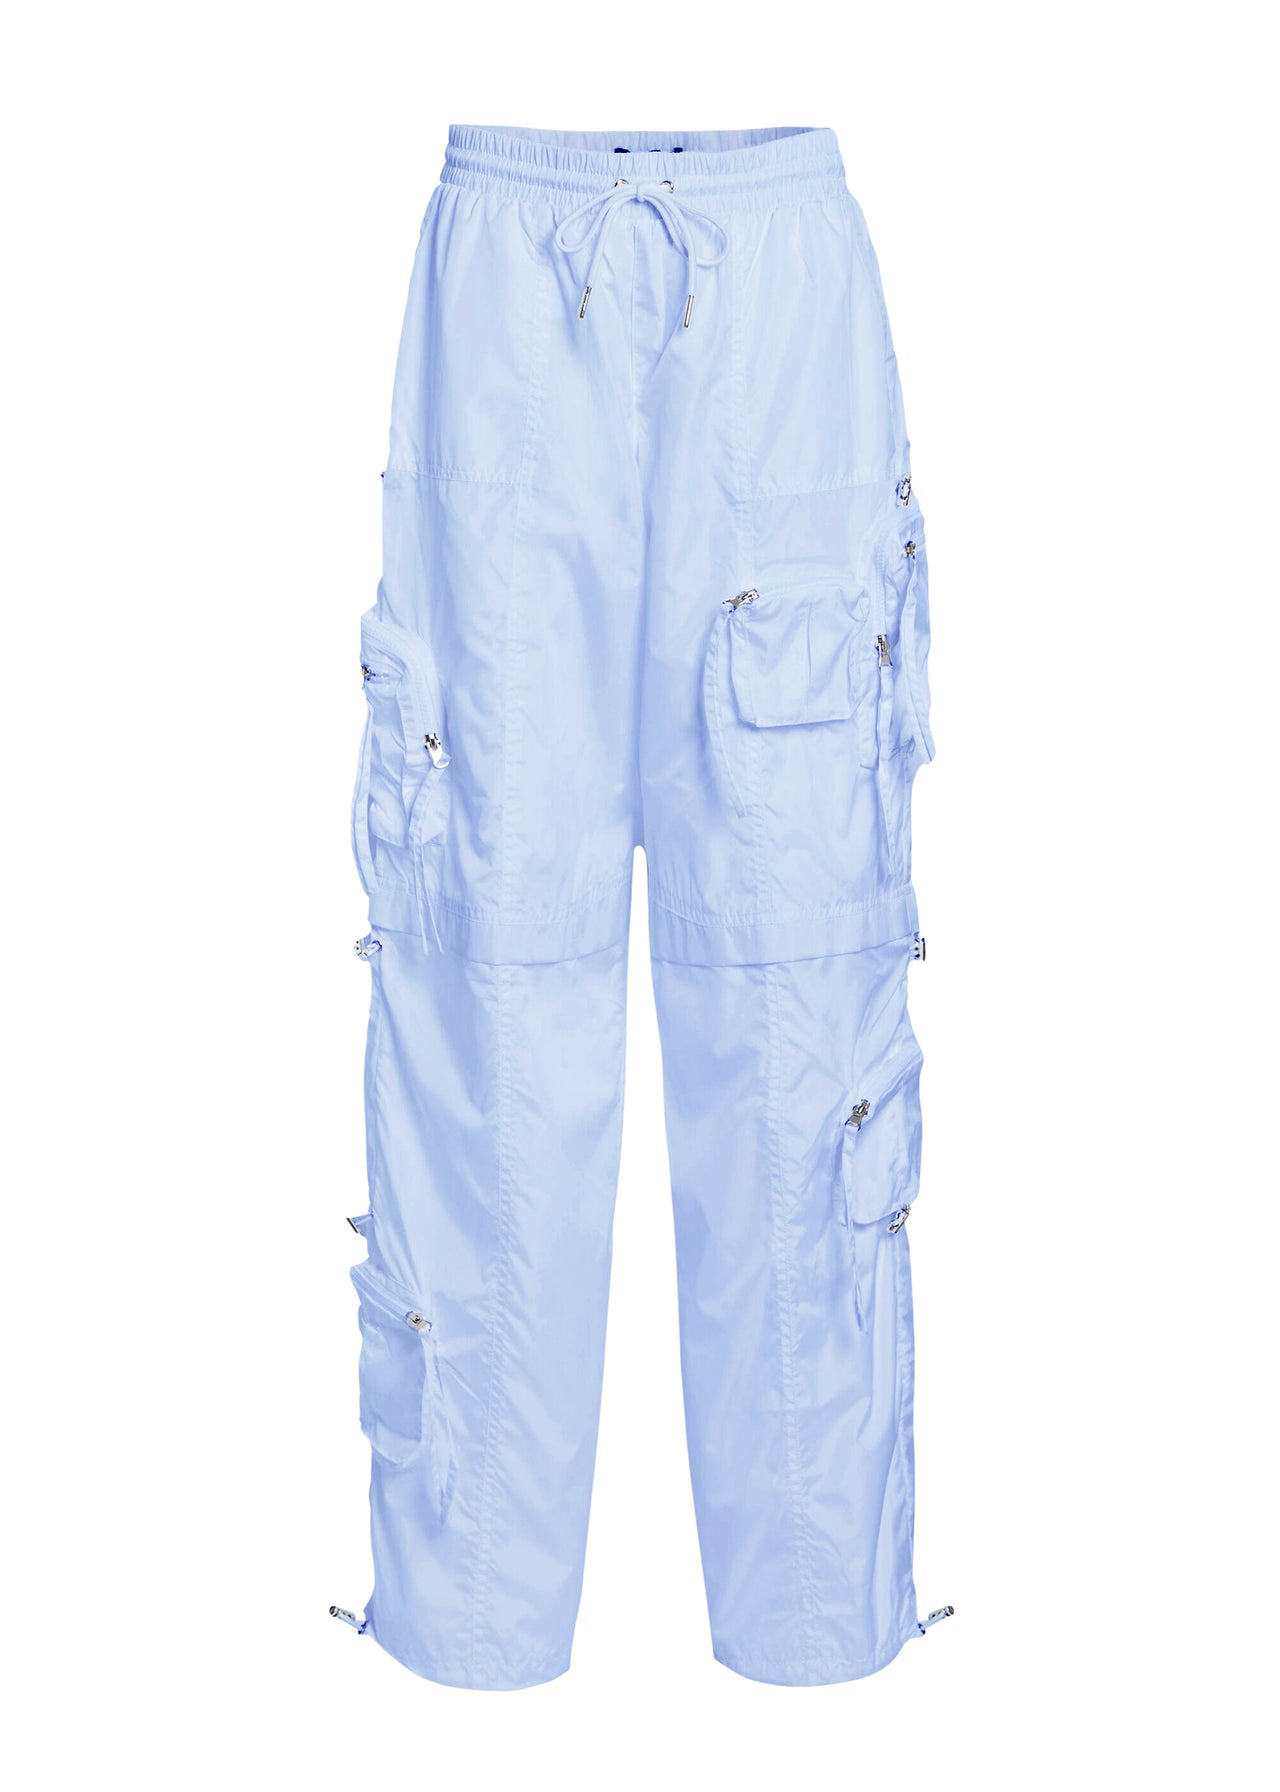 capri pants cargo outfit｜TikTok Search